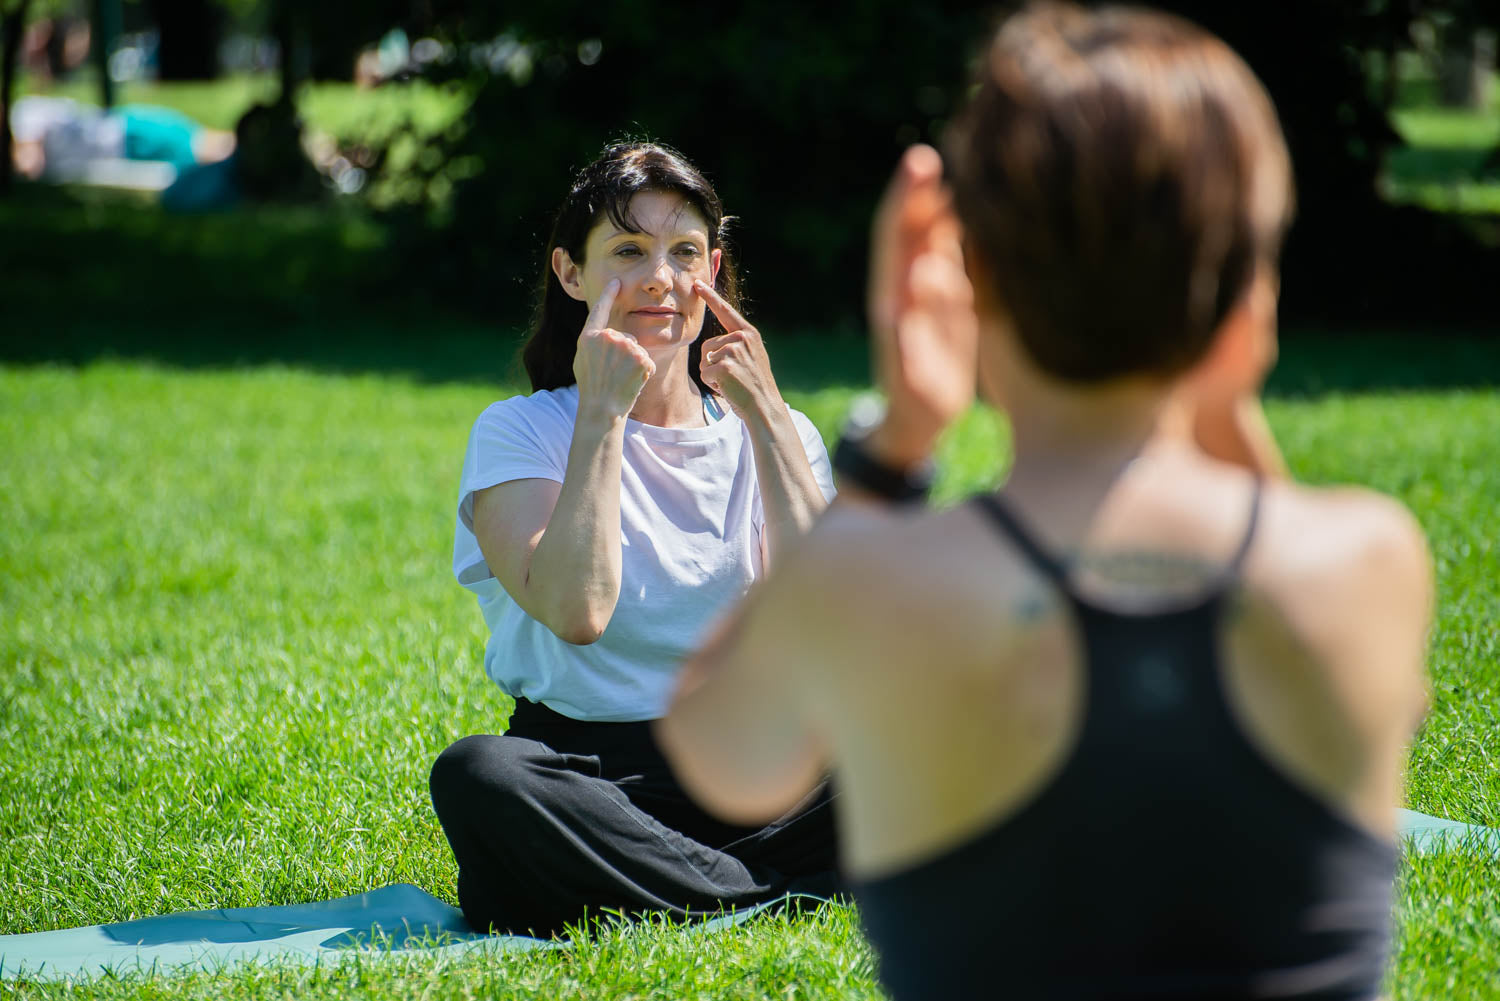 Insegnante di Yoga Facciale che insegna ad un corso one to one per insegnanti di yoga facciale al parco 